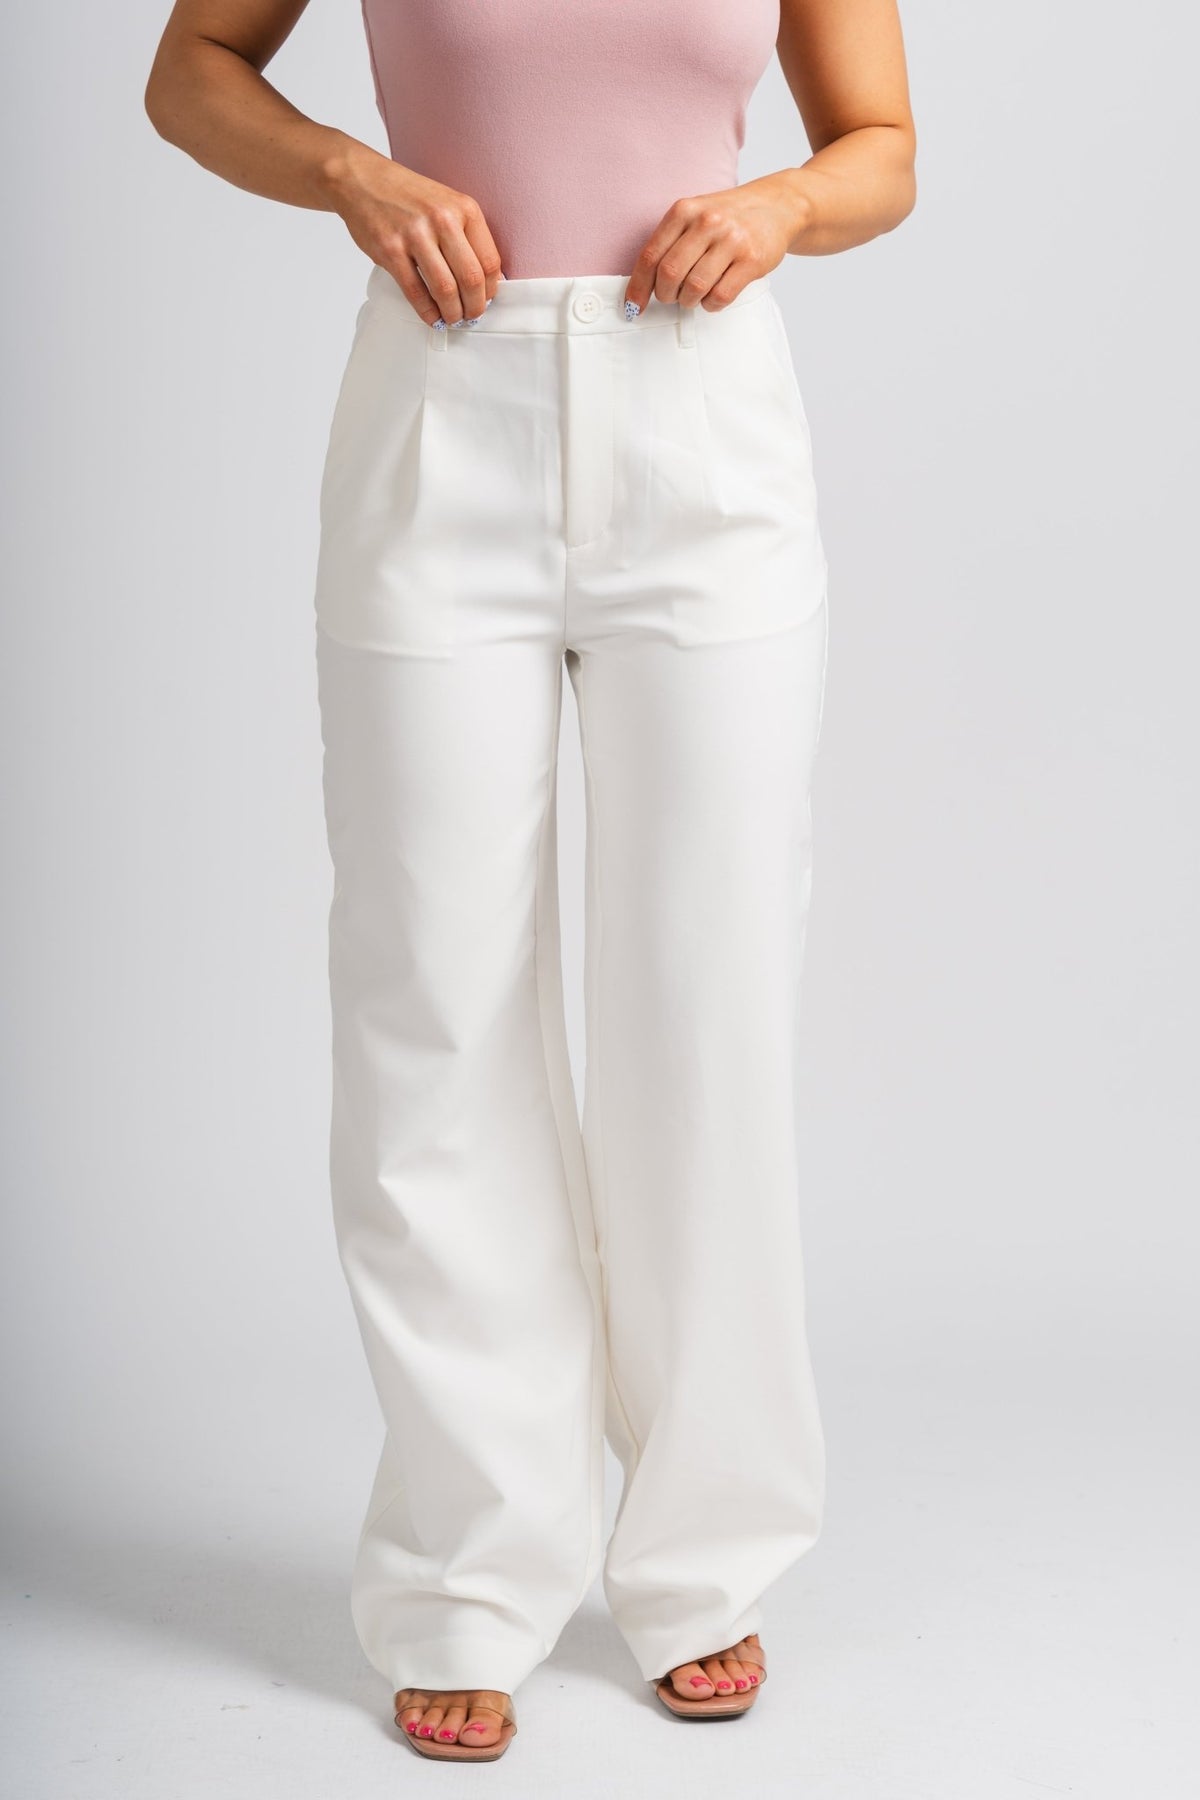 Designer White Trousers, Jeans & Leggings For Women